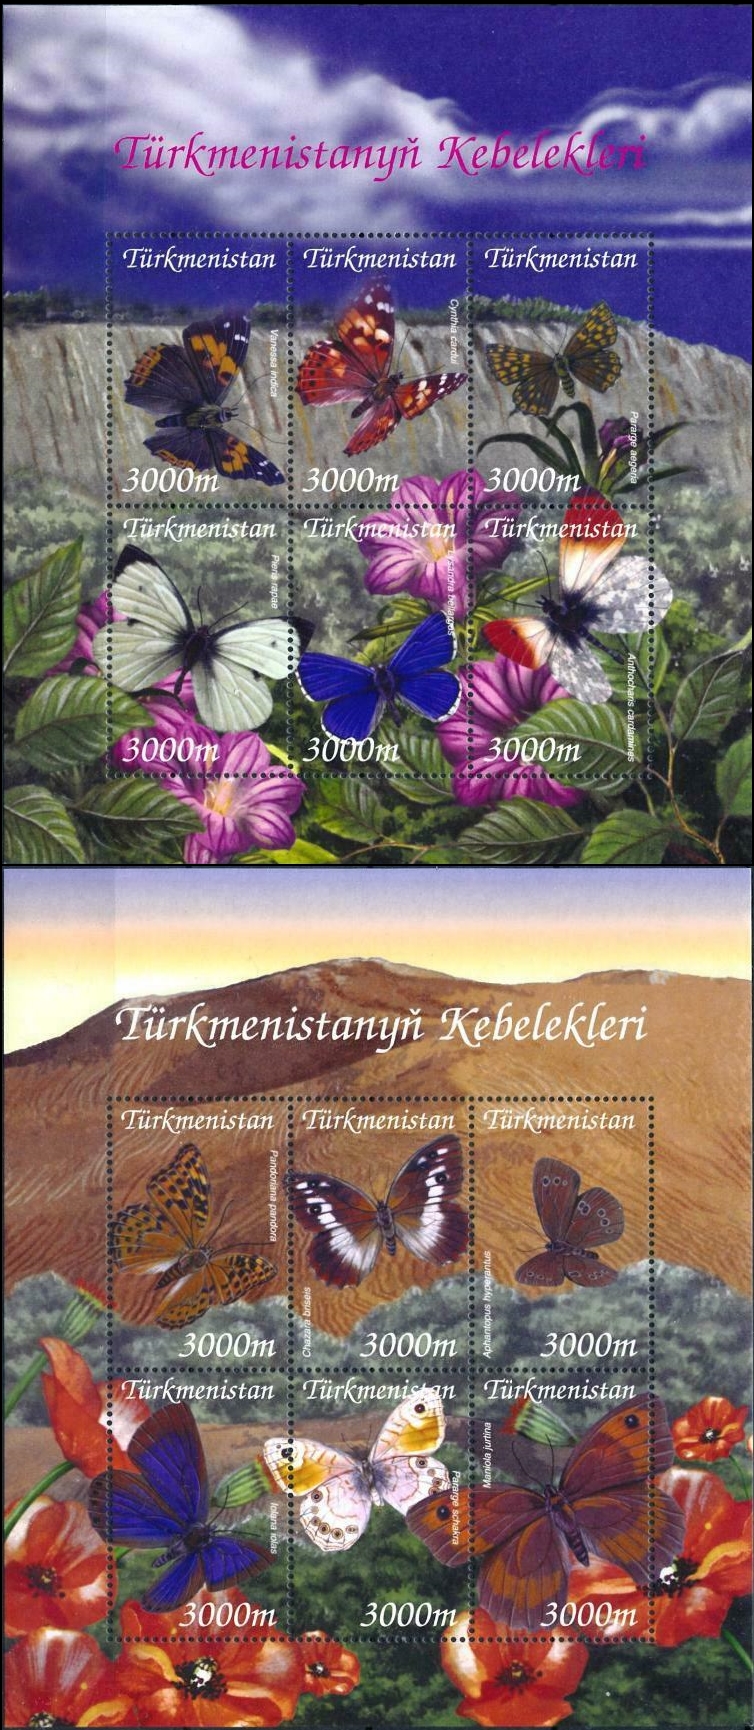 Turkmenistan 2002 Butterflies of Turkmenistan Scott Catalog No. 91-92